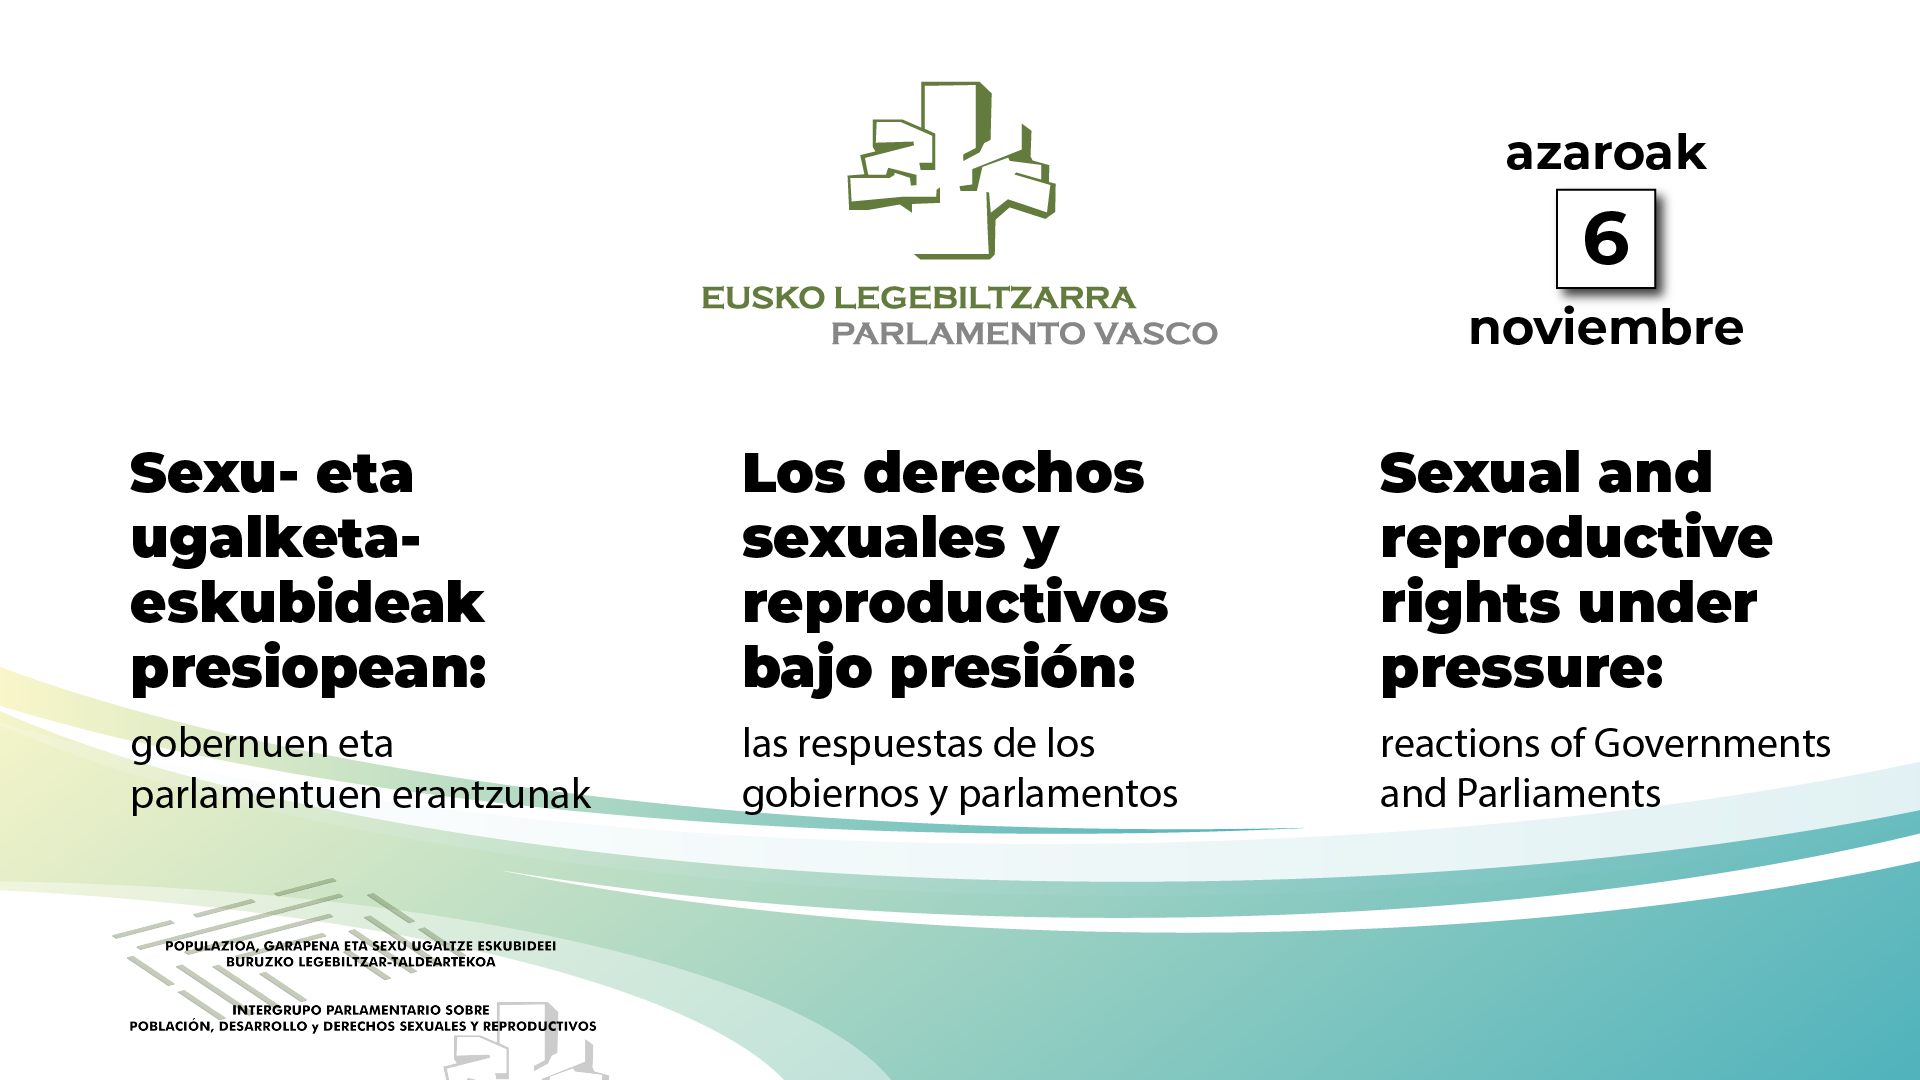 Los derechos sexuales y reproductivos bajo presión: las respuestas de los gobiernos y parlamentos